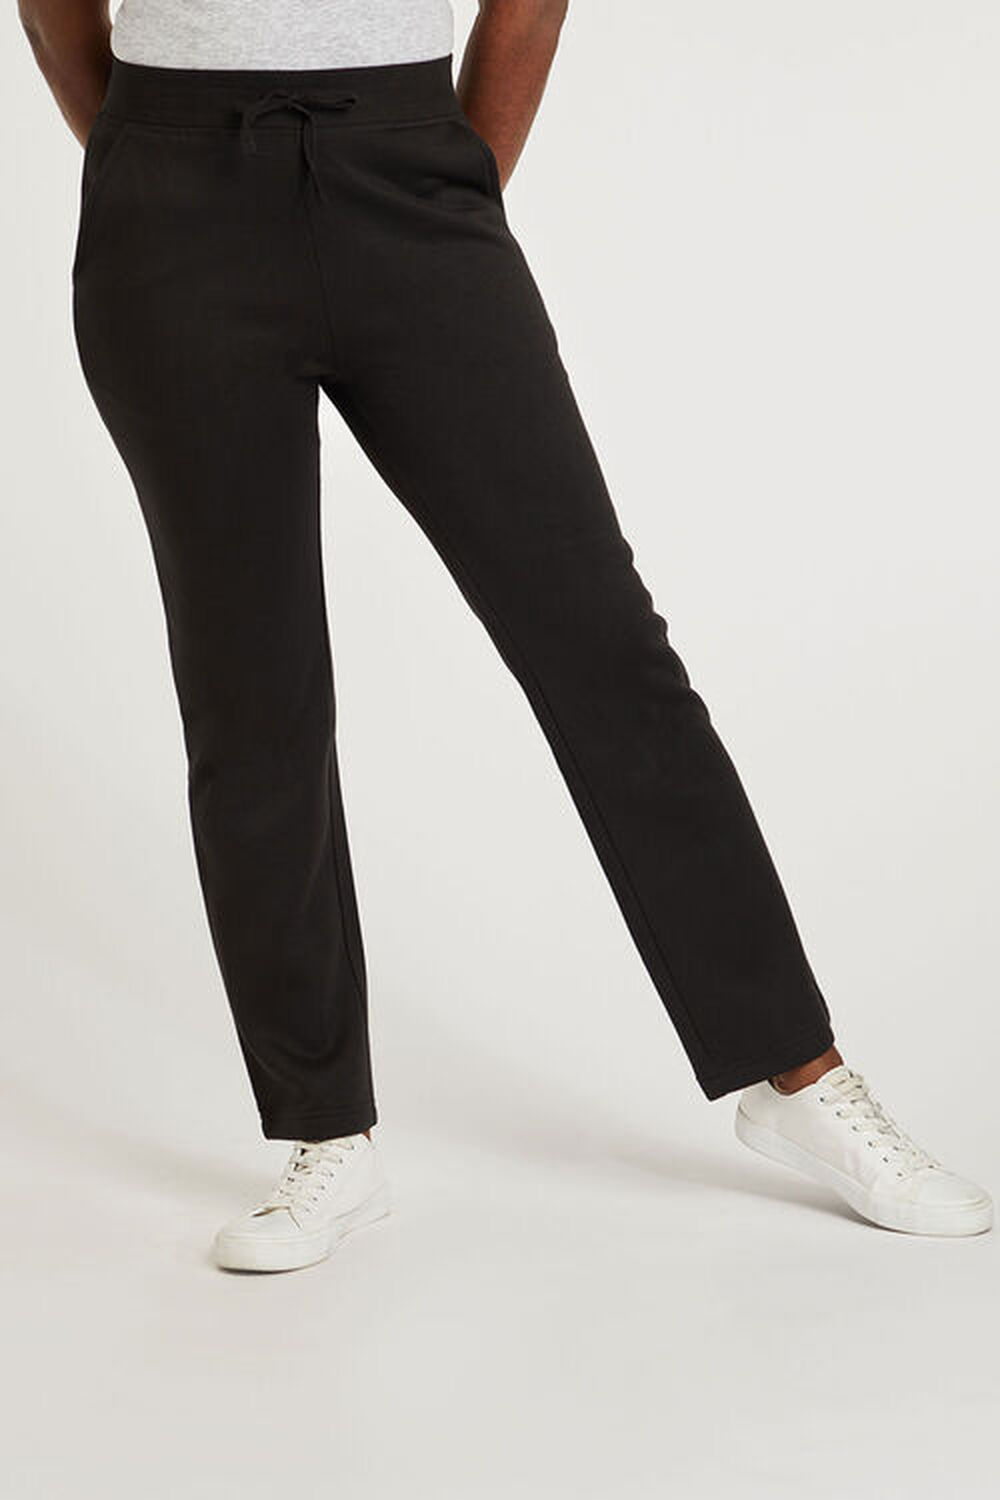 Bonmarche Black Jogging Pants, Size: 28